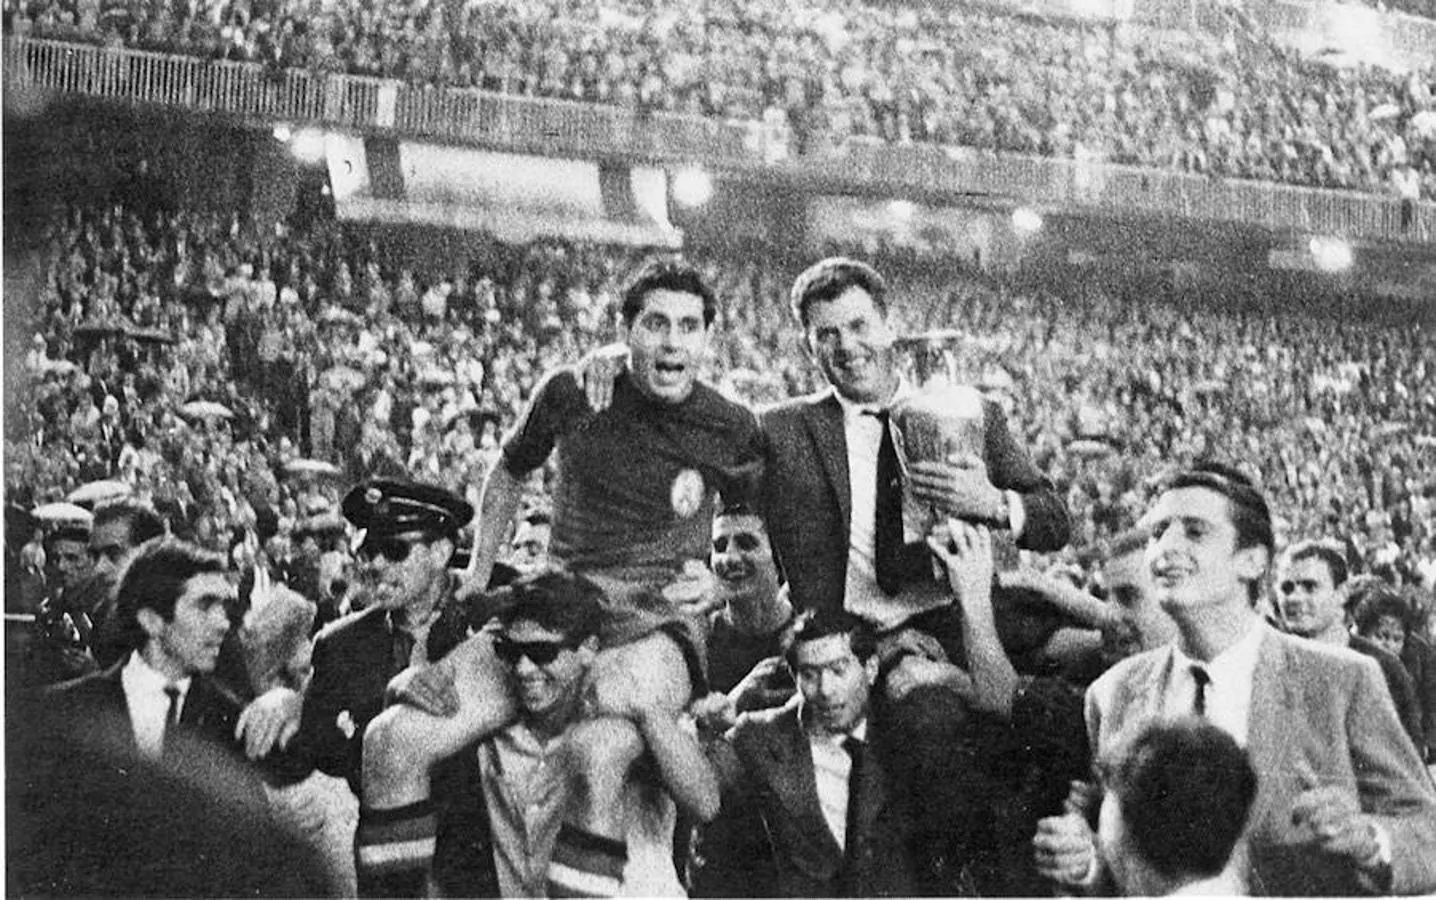 El central Olivella y el entrenador Pepe Villalonga de la Selección de España de fútbol son llevados a hombros tras ganar la primera Eurocopa en junio de 1964